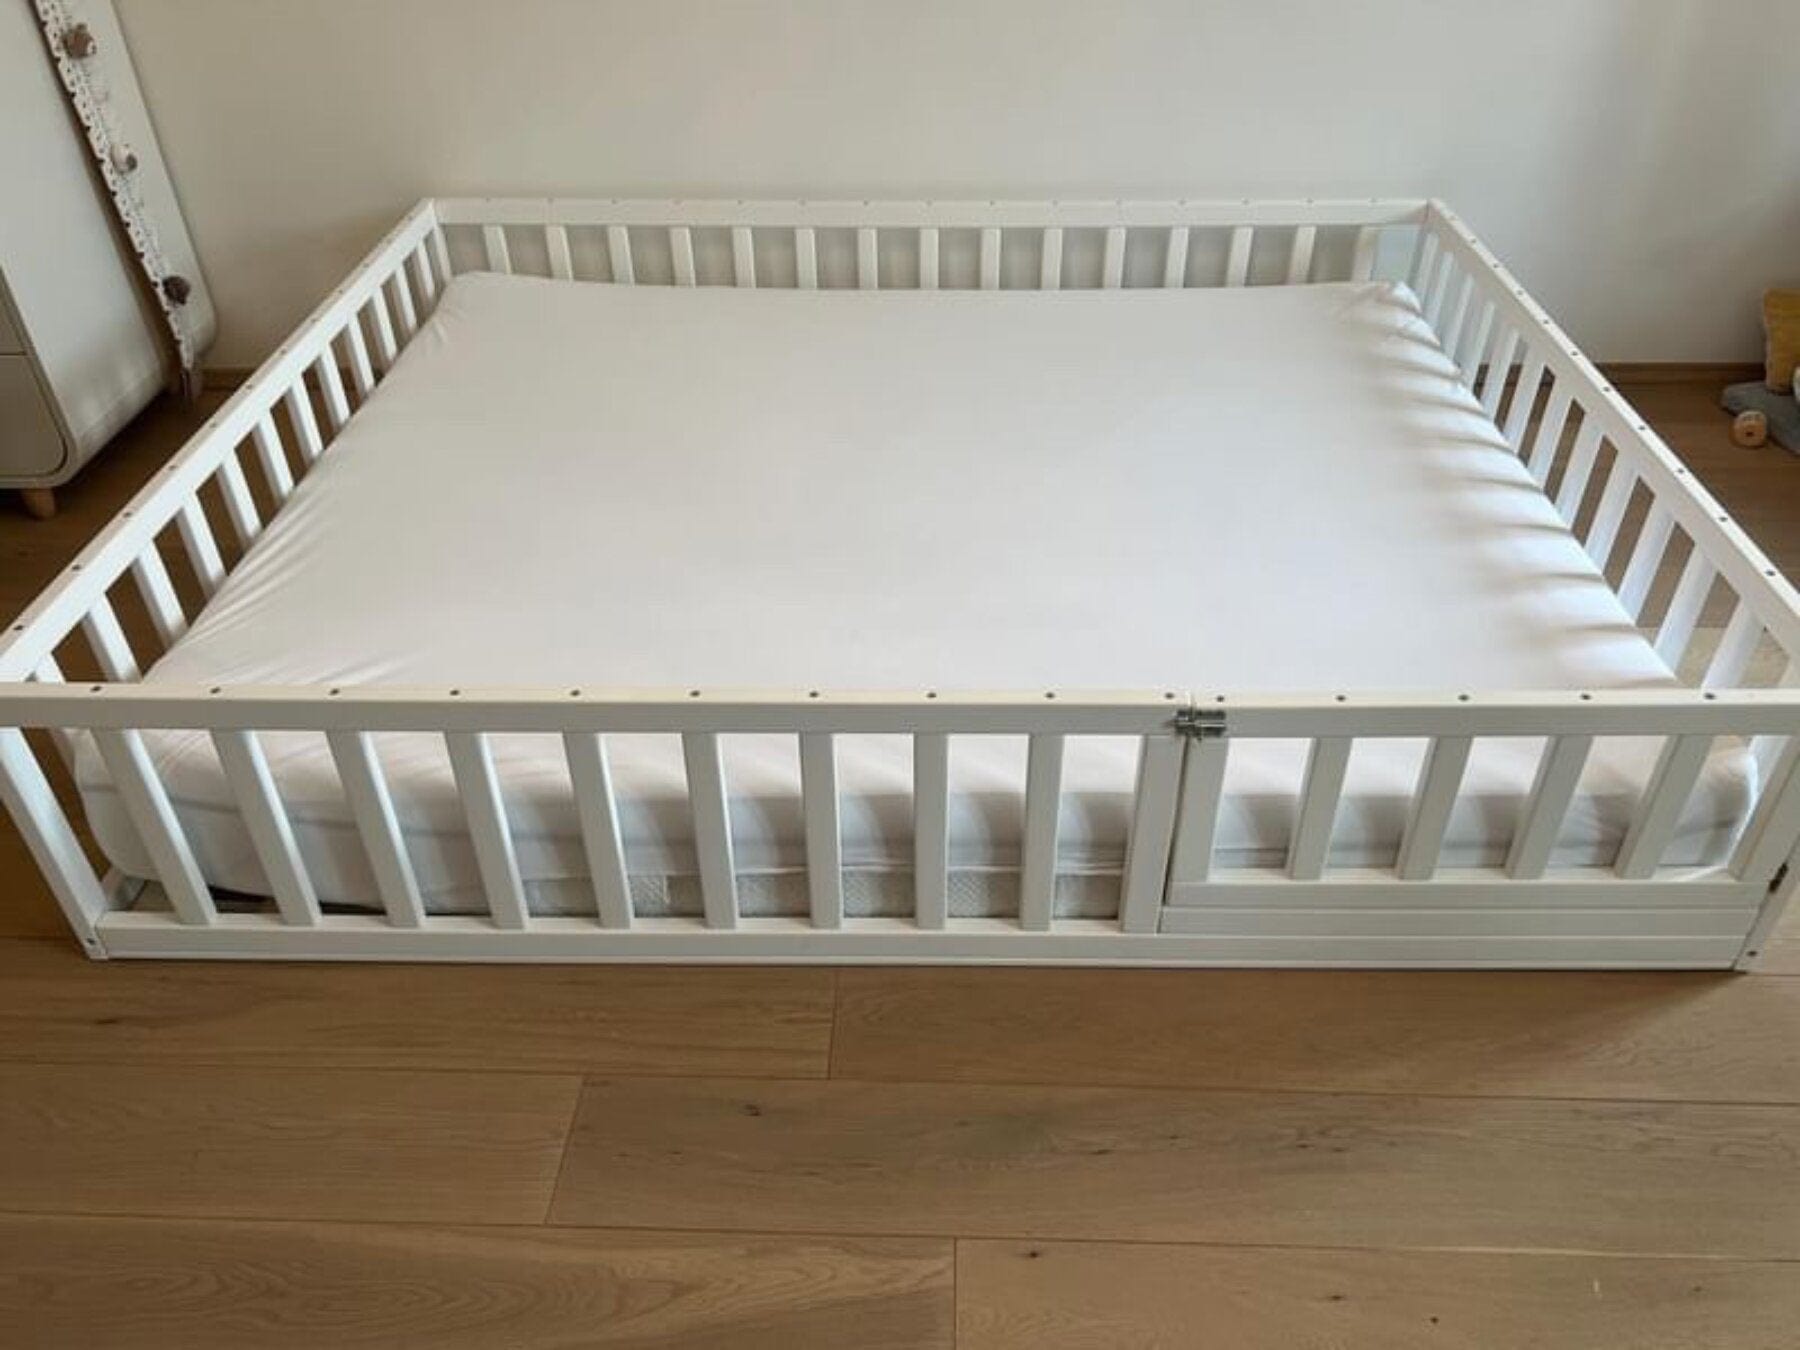 Children's bed, baby bed, cot, floor bed with door